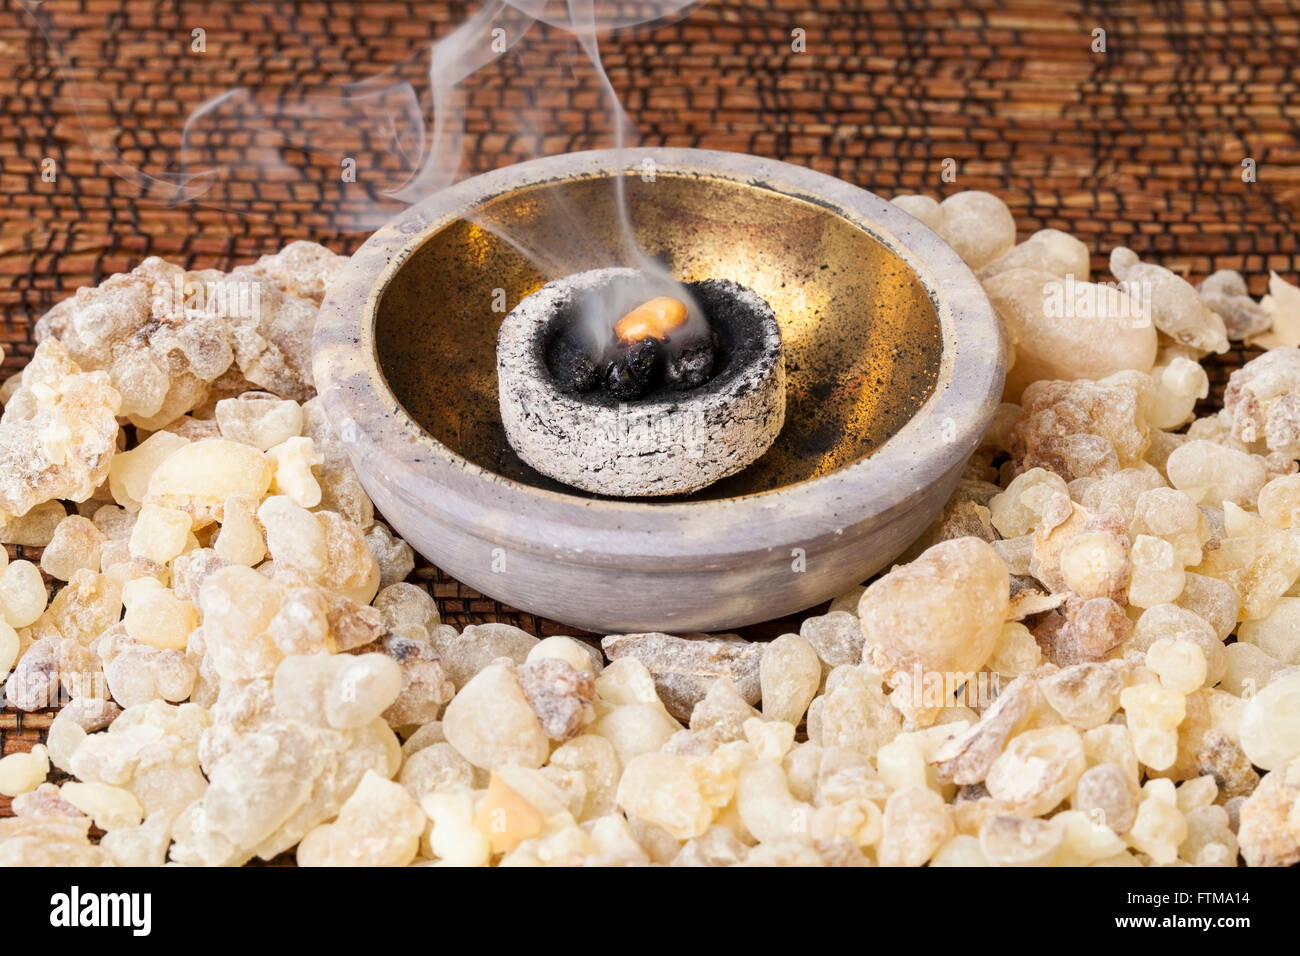 La quema de incienso sobre el carbón caliente. El incienso es una resina aromática, utilizado para ritos religiosos, incienso y perfumes. Foto de stock